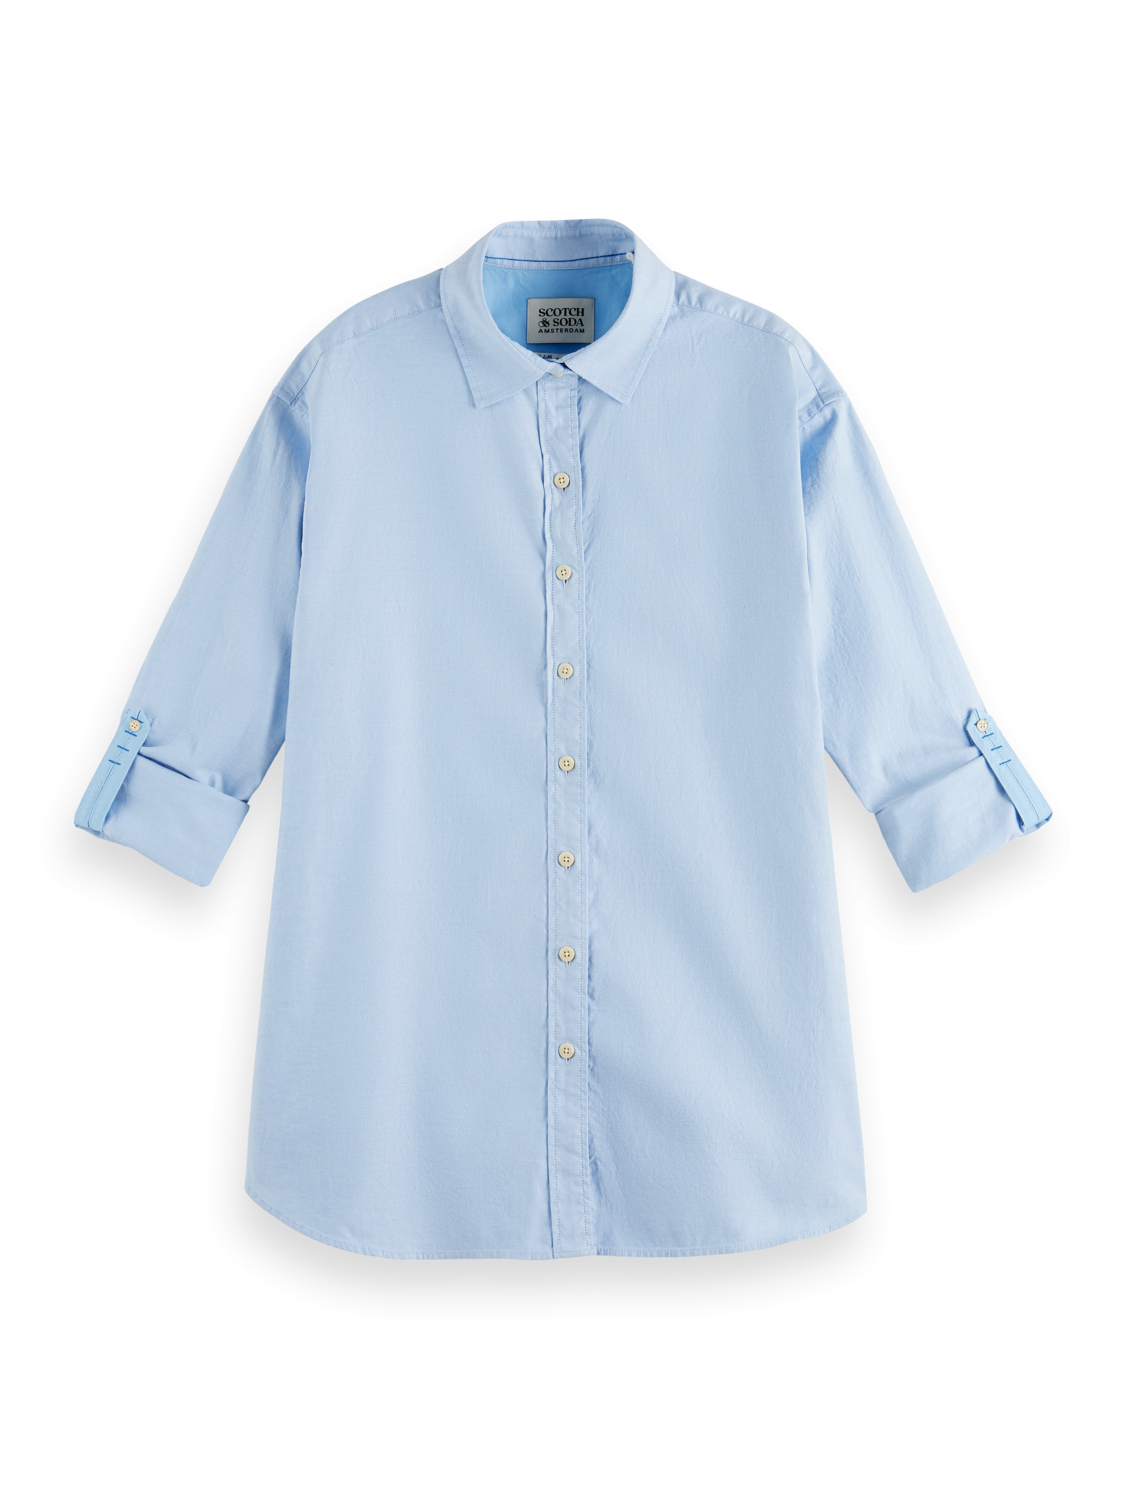 Рубашка женская Scotch & Soda 173208/6426 голубая 36